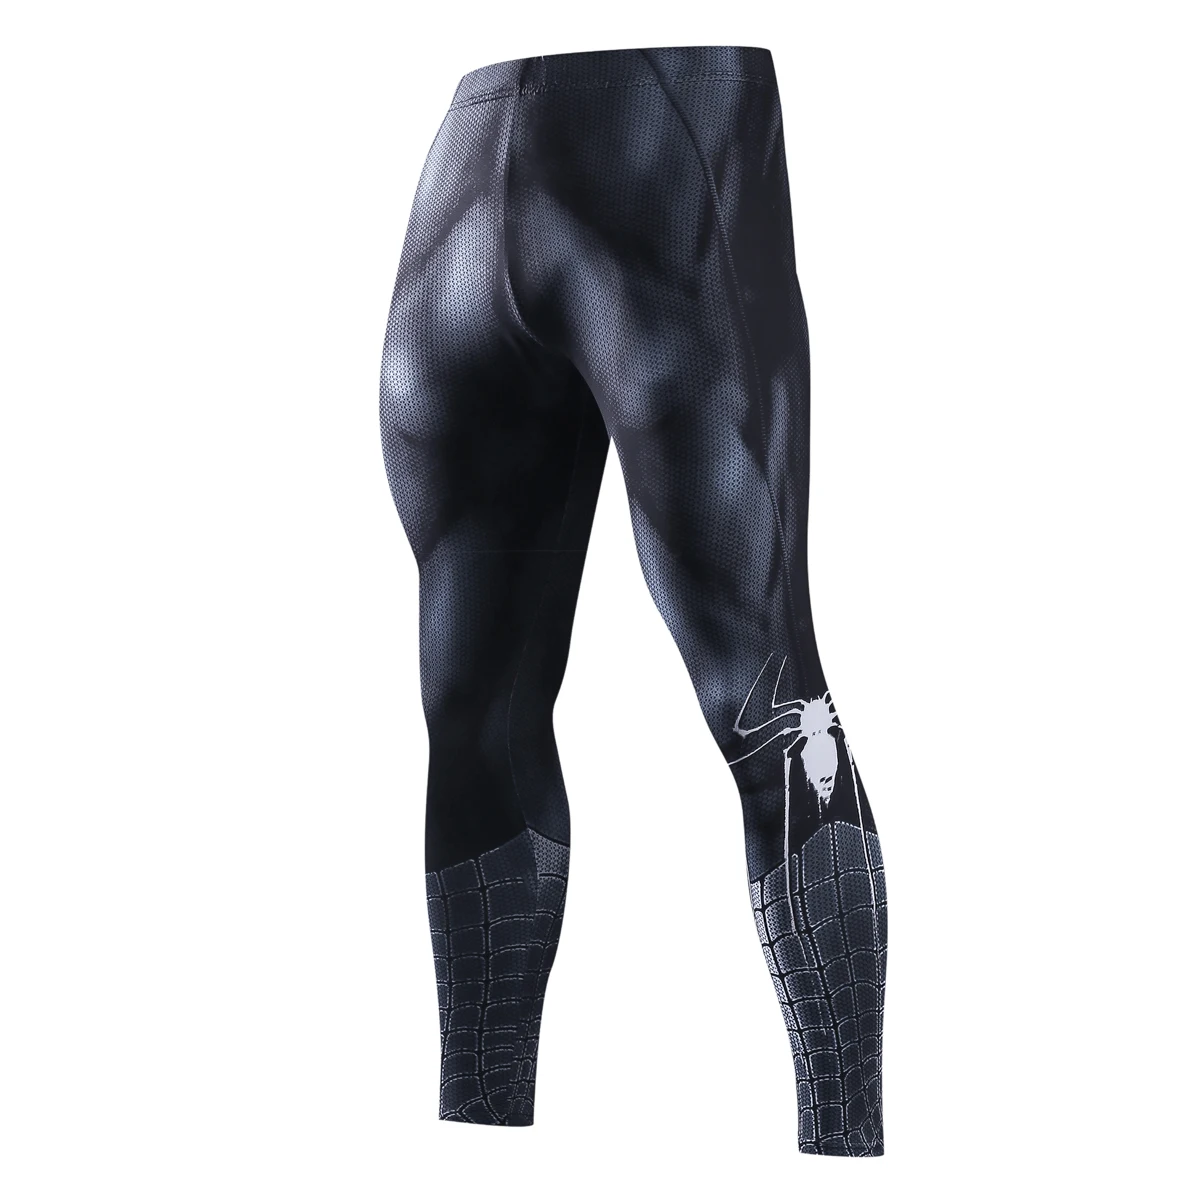 Обтягивающие спортивные штаны для мужчин, компрессионные штаны для мужчин, модные леггинсы для мужчин, для бега, мужские 3D штаны для фитнеса, Супермен, эластичные брюки - Цвет: JSK13